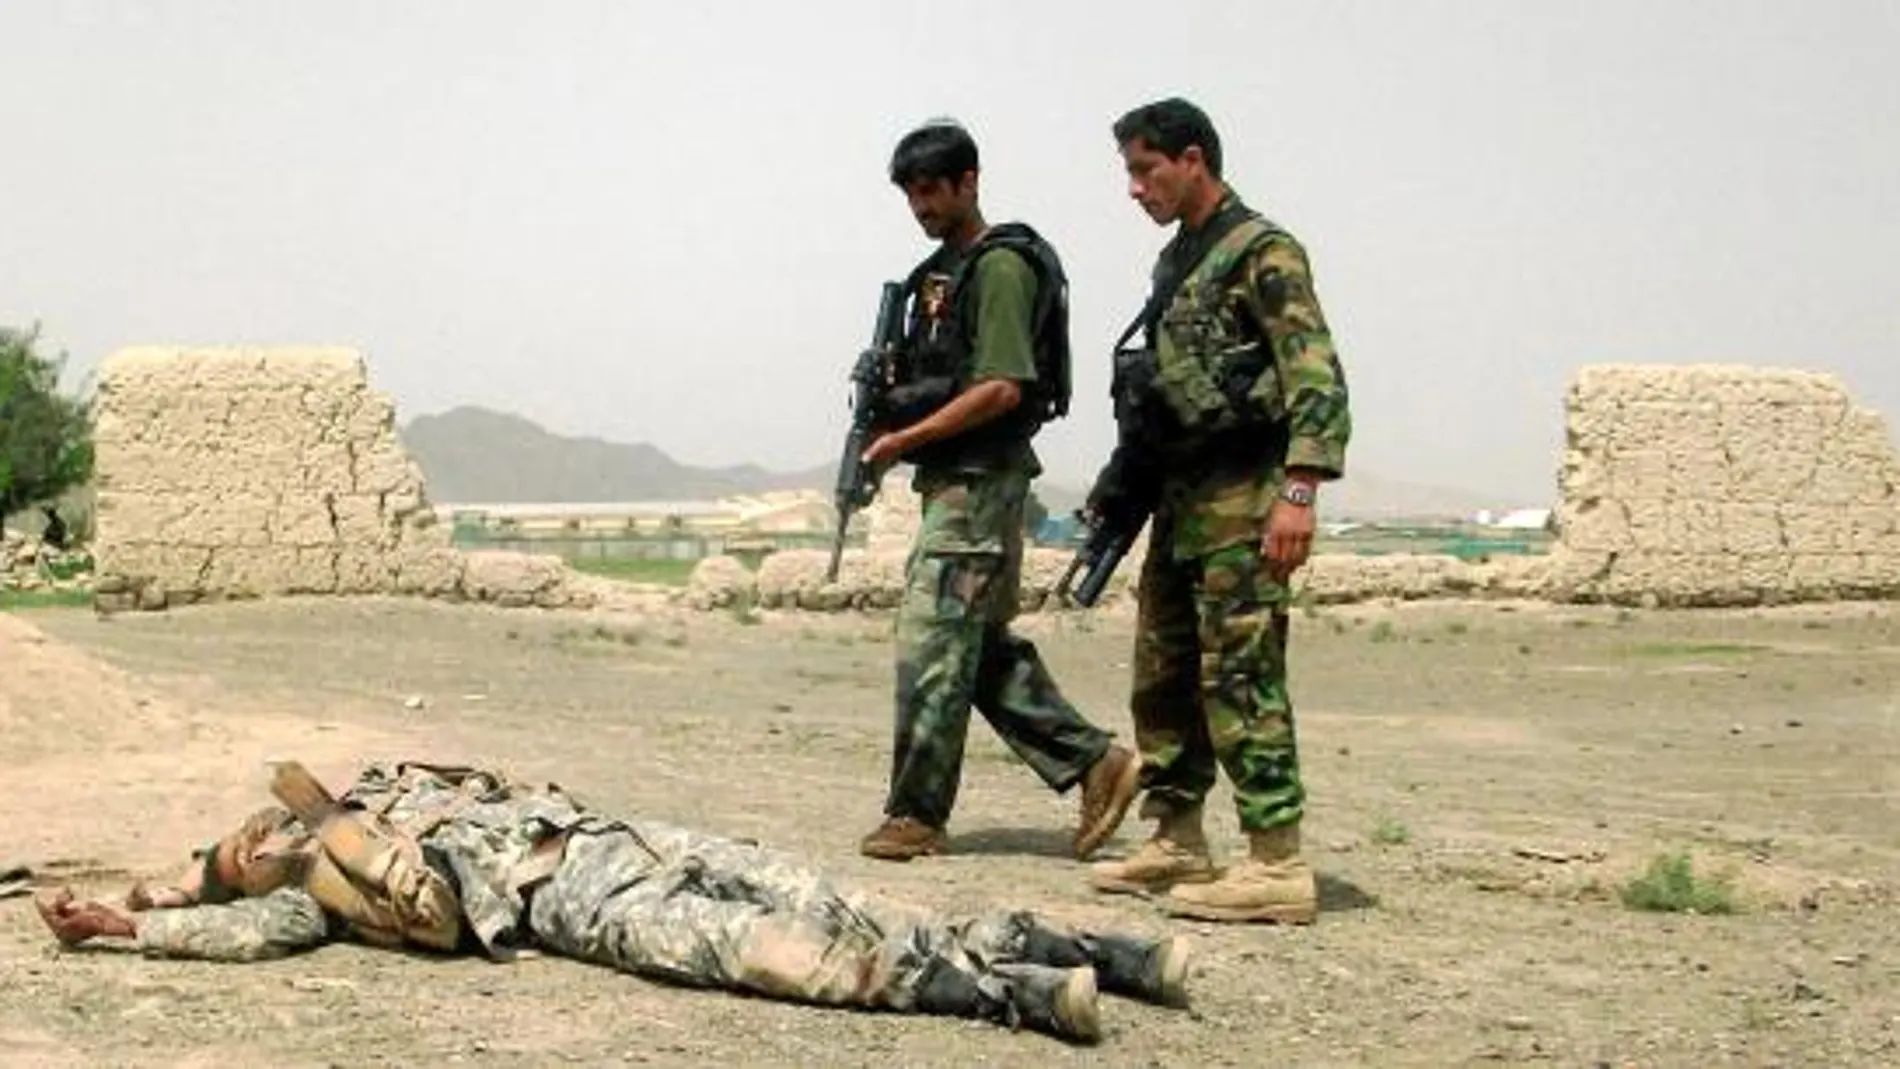 Los talibán atacan dos bases aliadas 72 horas después de asaltar la española